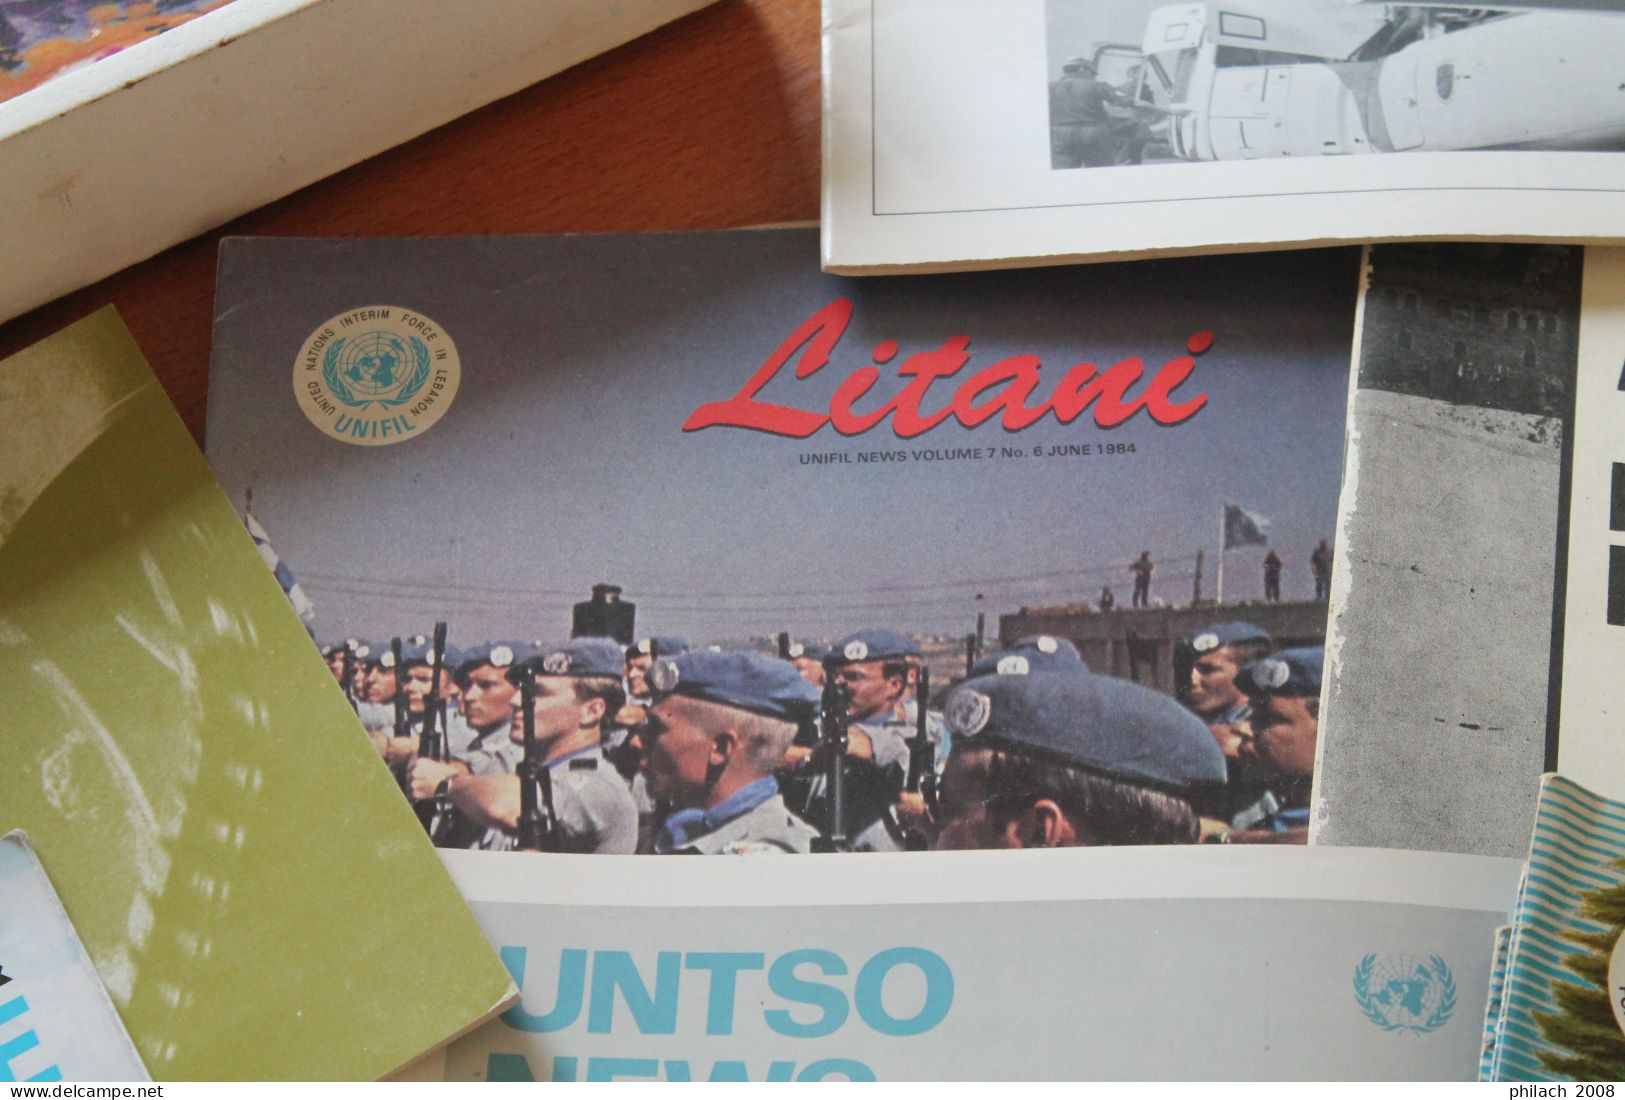 Lot de 27 revues ramené par un casque bleu français dans le Sinai entre 75 et 85